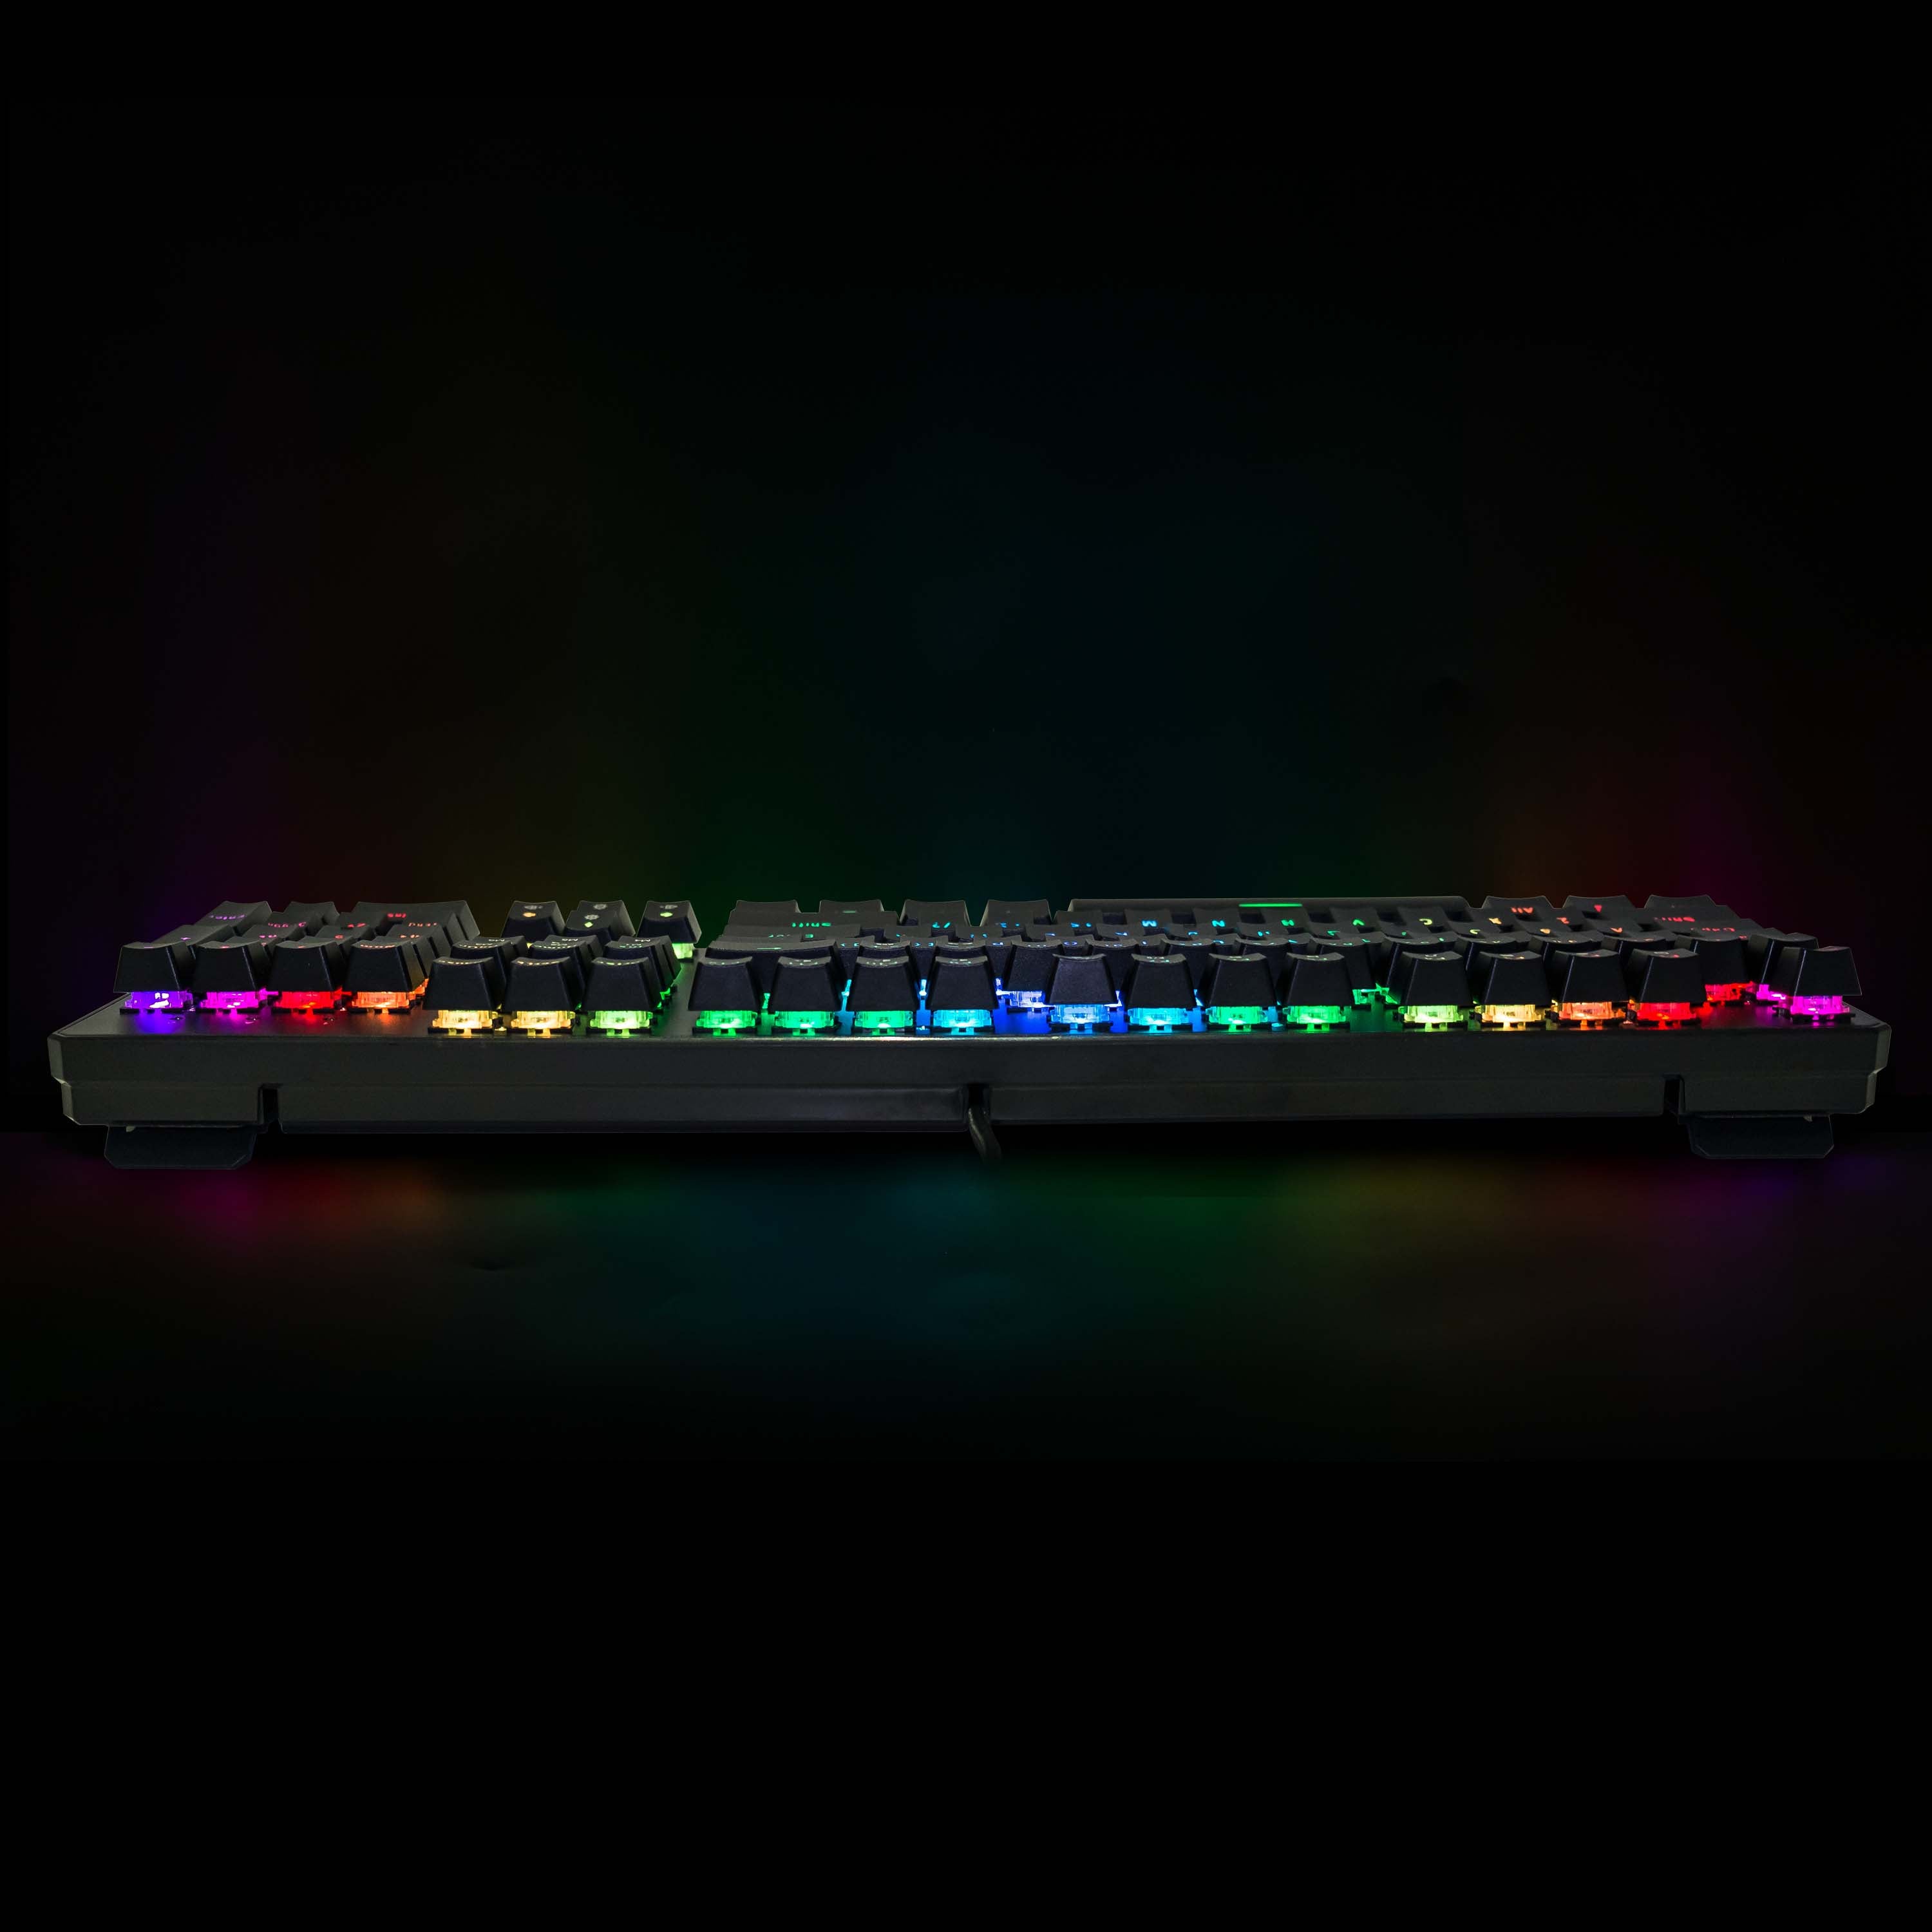 Tecware Phantom RGB Keyboard